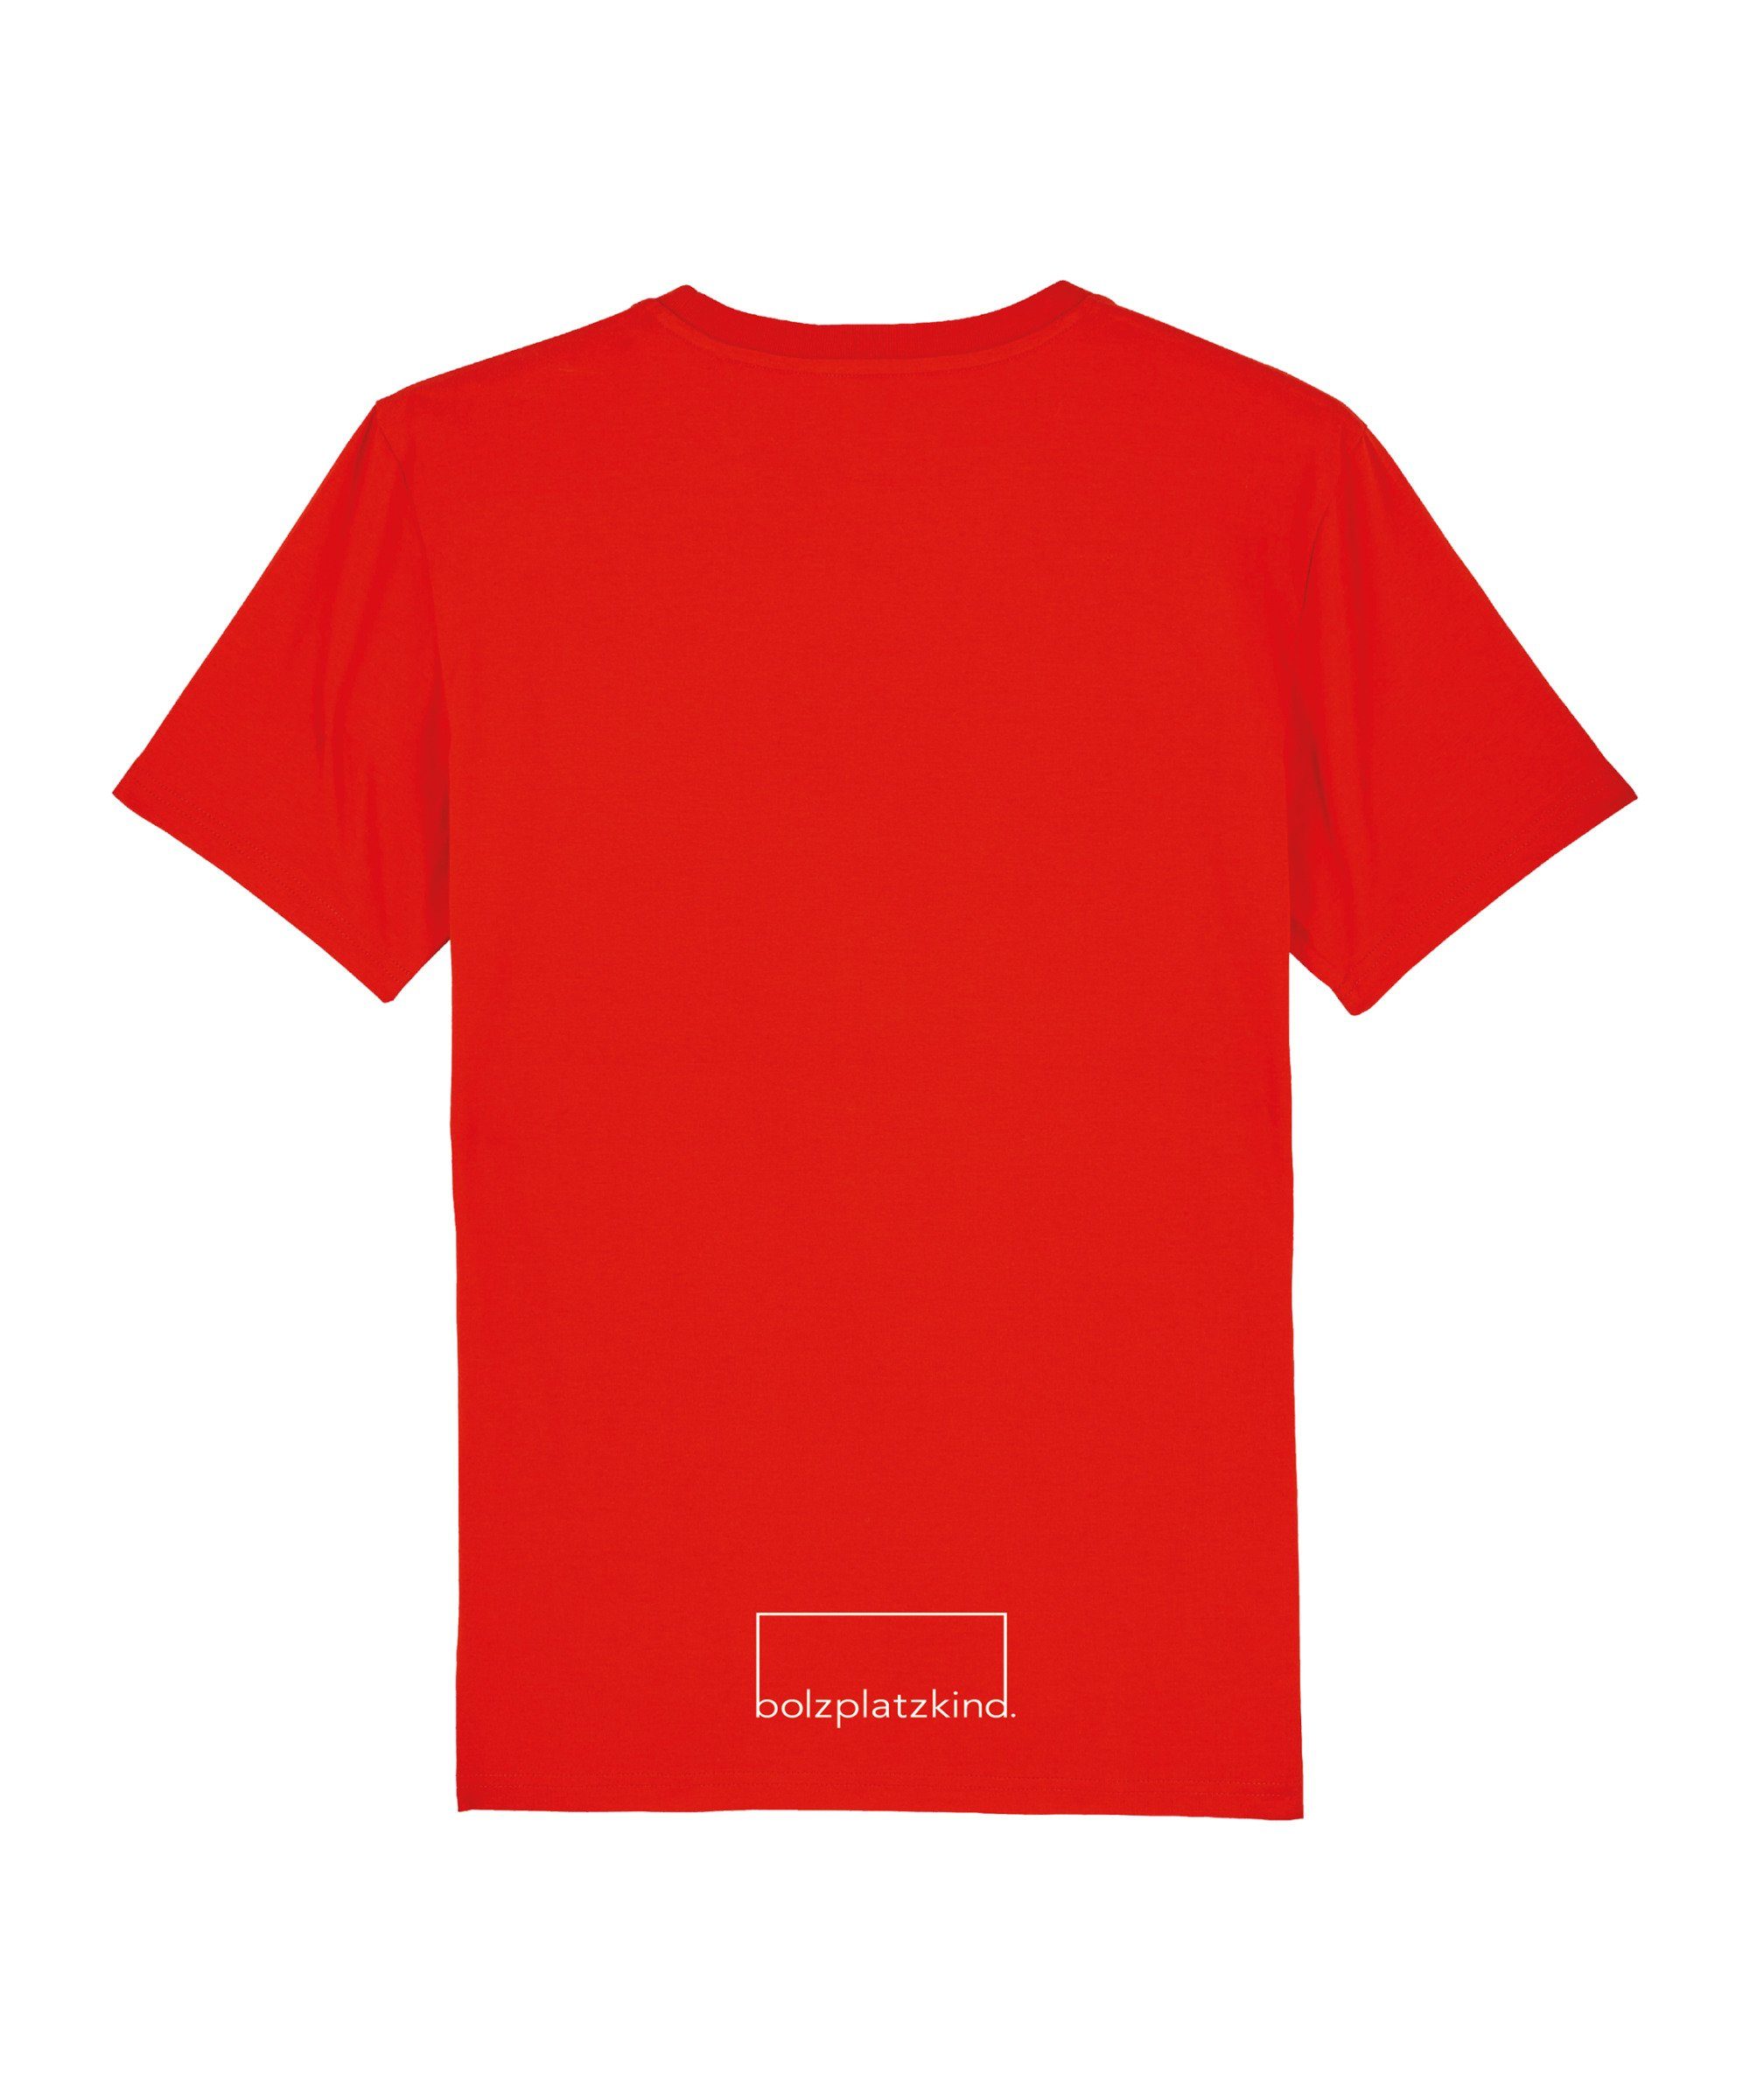 Nachhaltiges Bolzplatzkind "Line-Up" T-Shirt Produkt T-Shirt rot